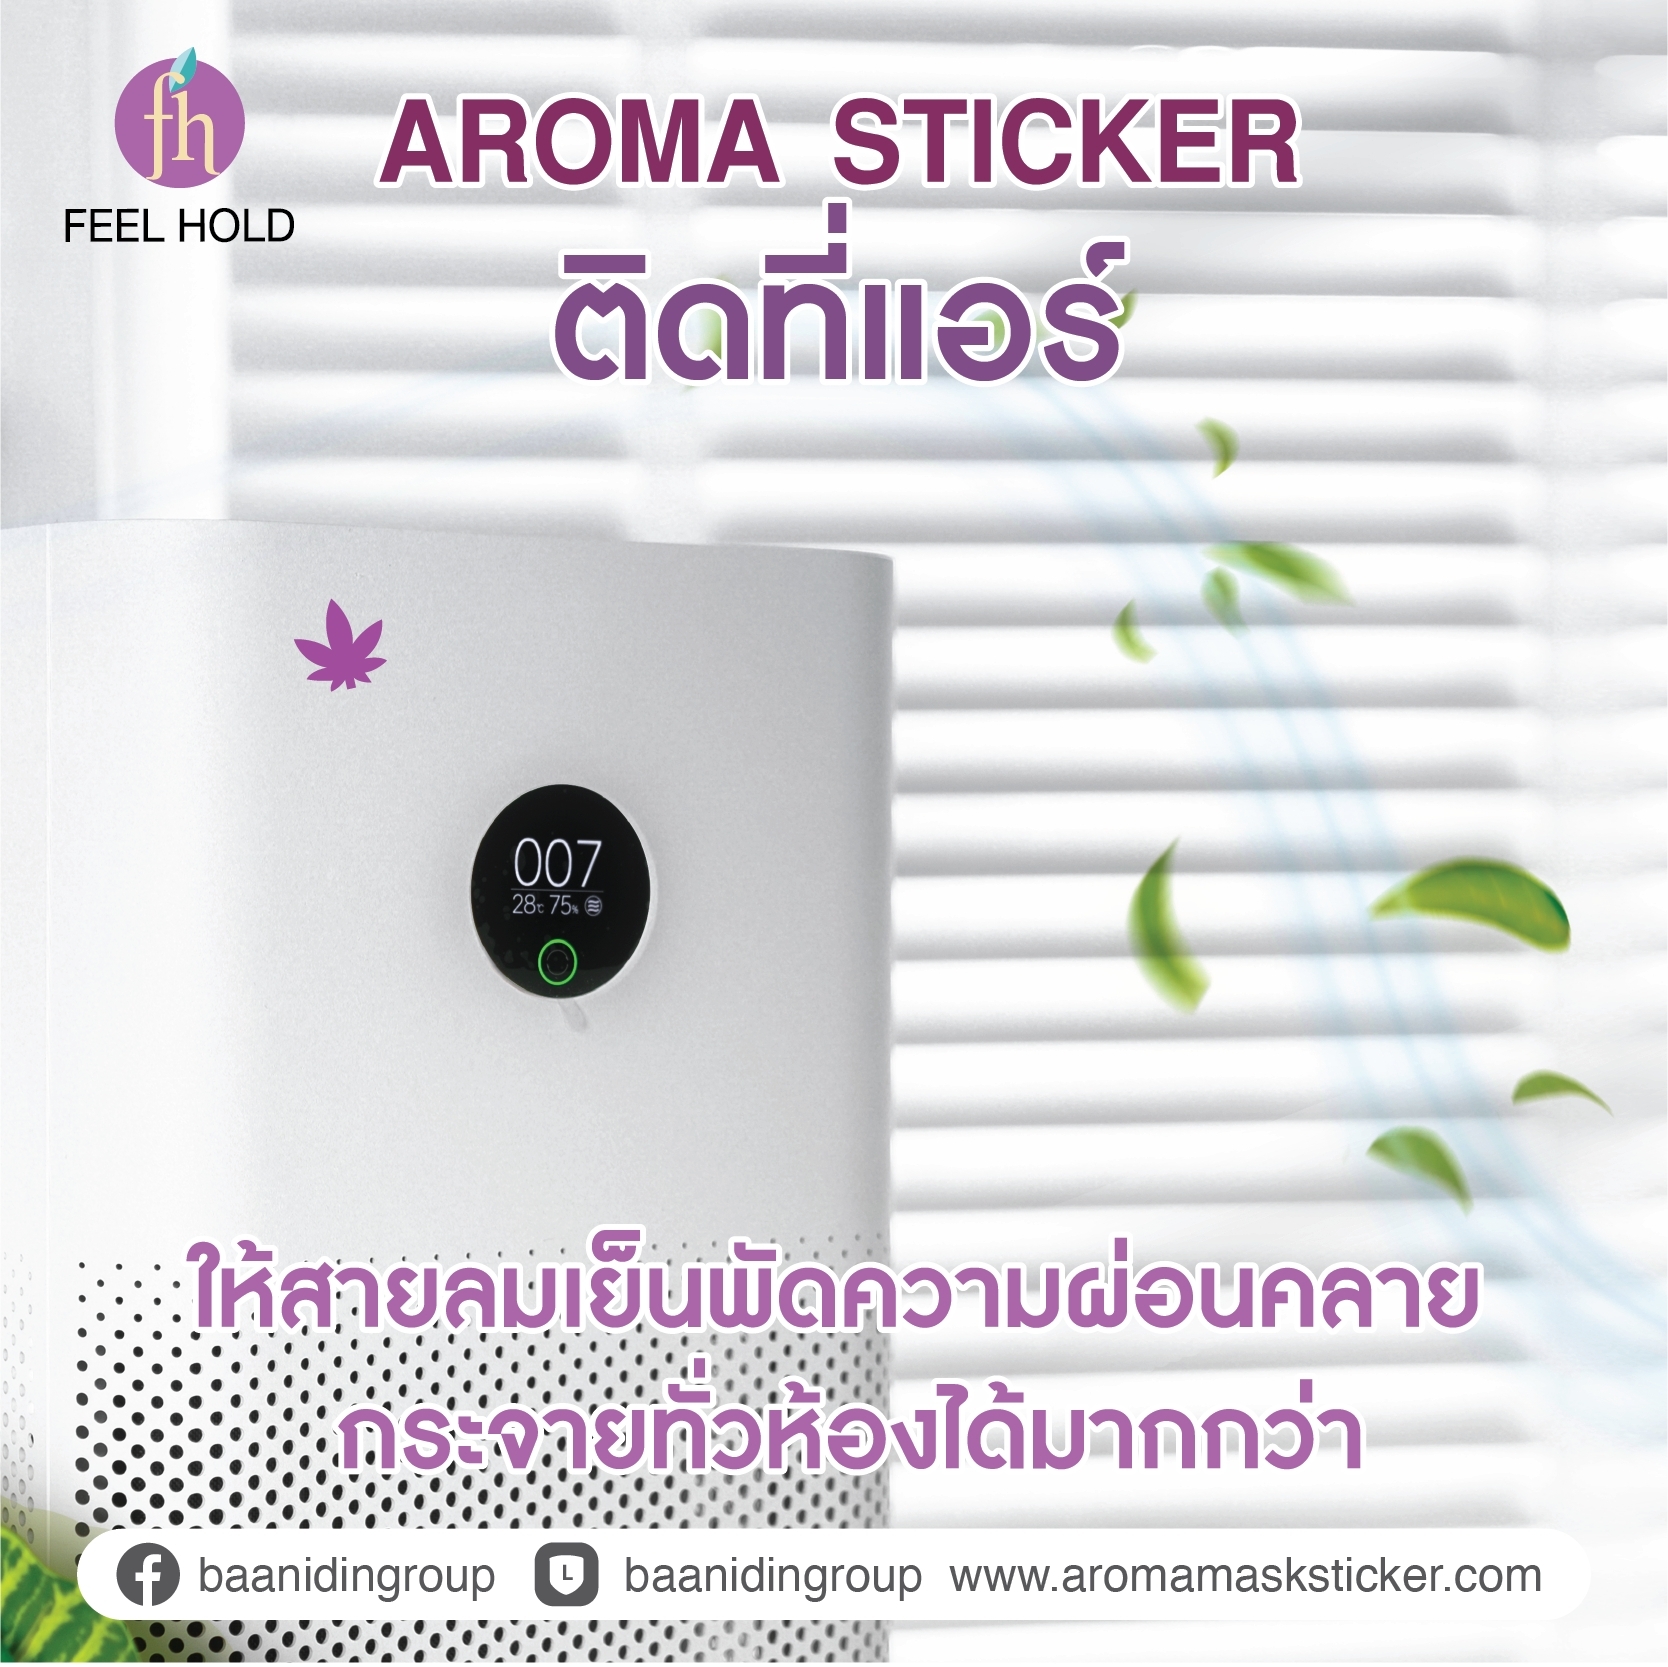 Aroma Sticker  กรุ่นกลิ่นหอม  ให้คุณมีพื้นที่ความสุขได้กว้างกว่า